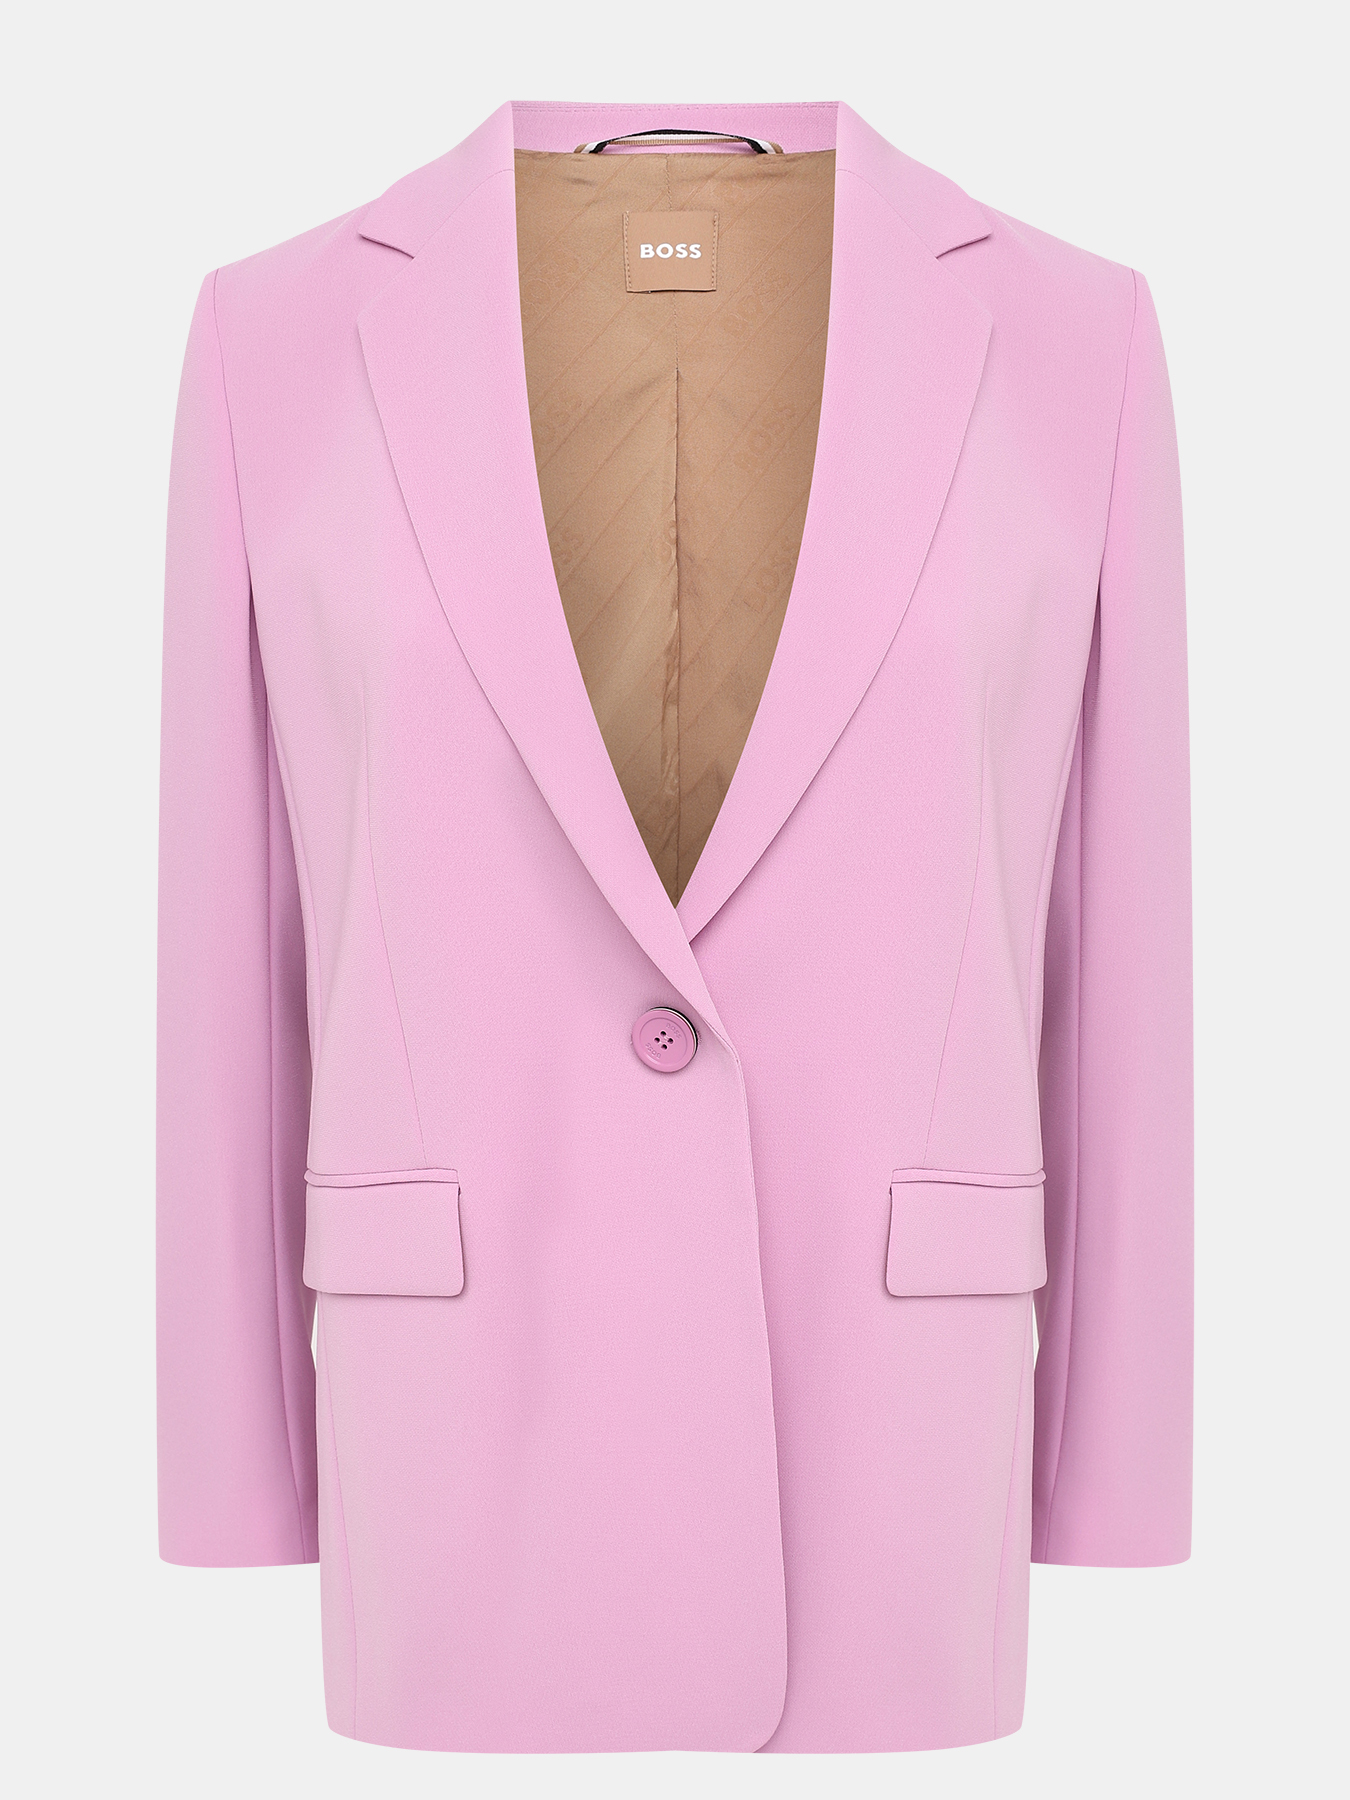 Пиджак Jocalua BOSS 434141-020, цвет розовый, размер 44